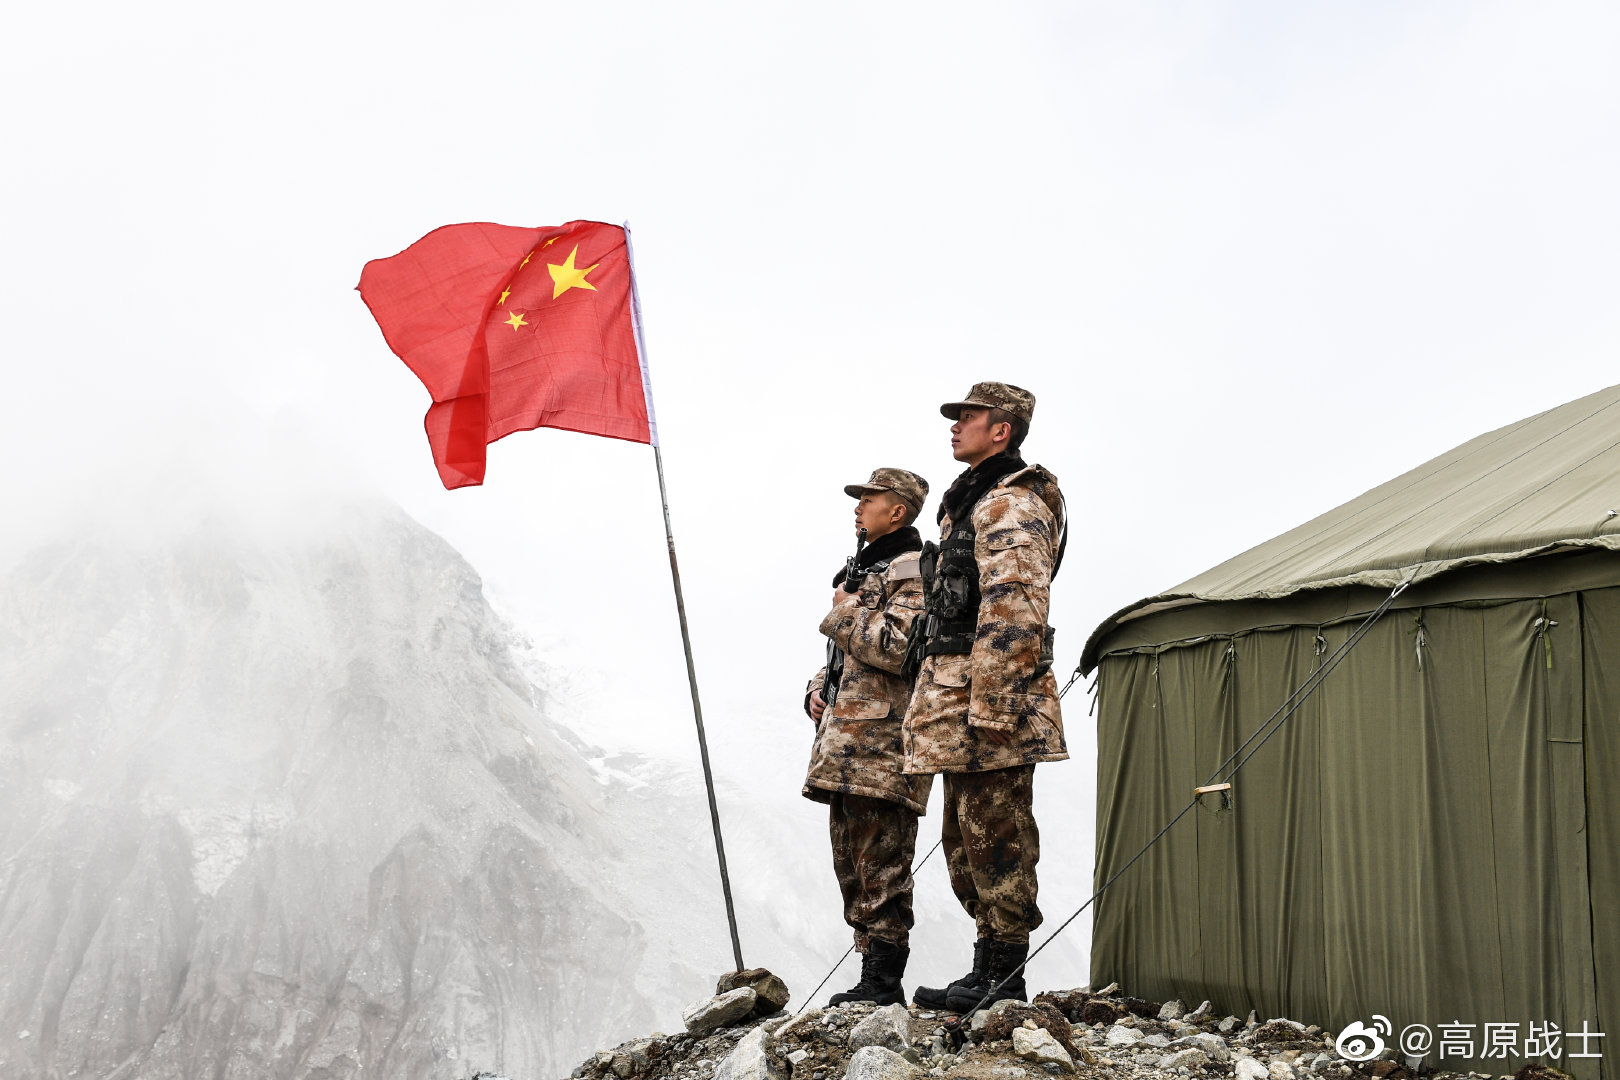  西藏军区某团的巴弄卓康哨点 图自西藏军区微博@高原战士